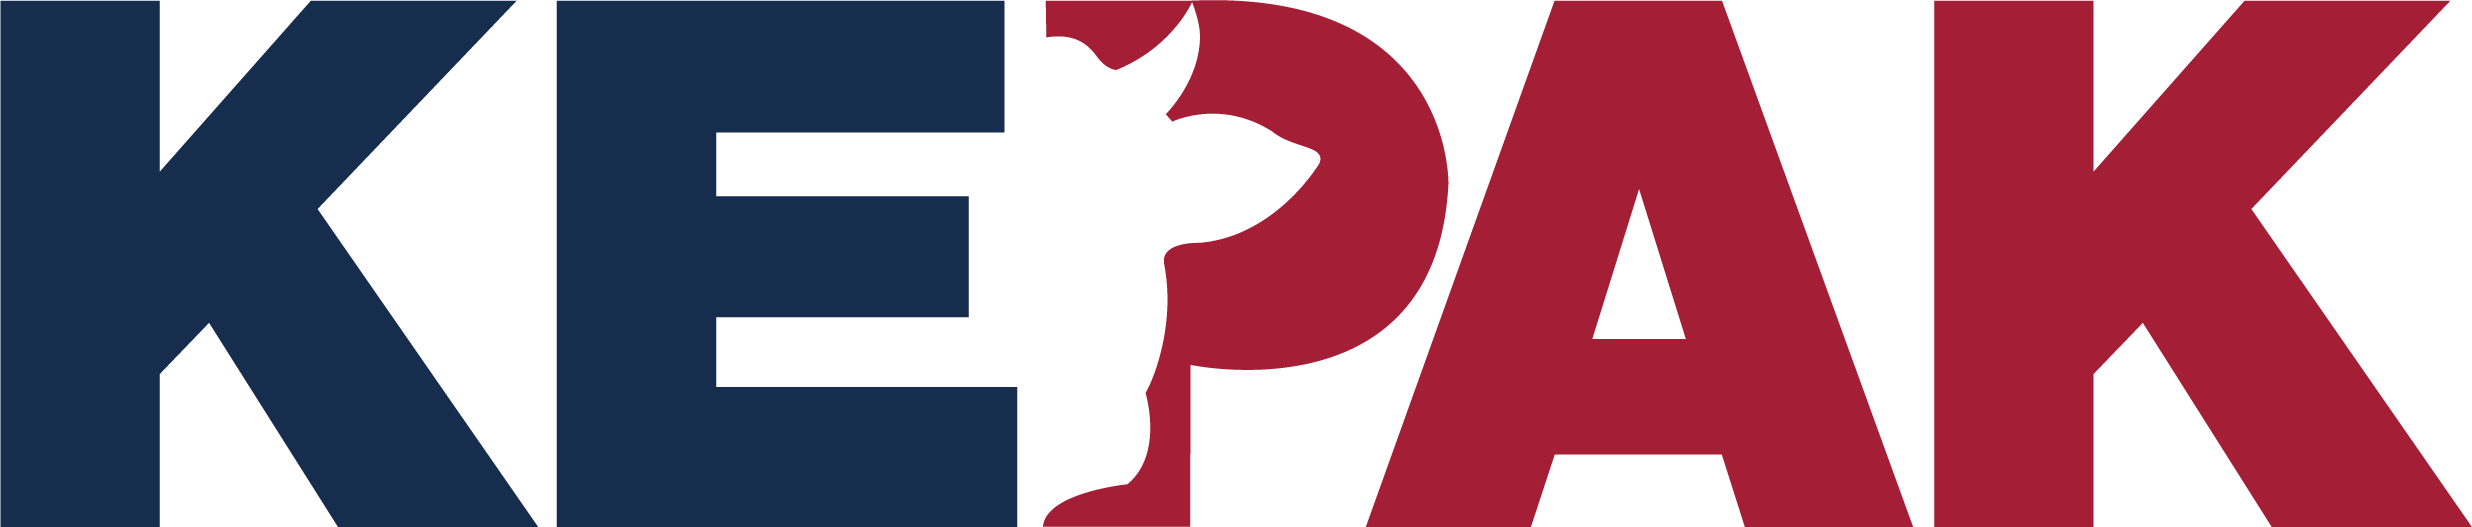 Image of Kepak Group logotype